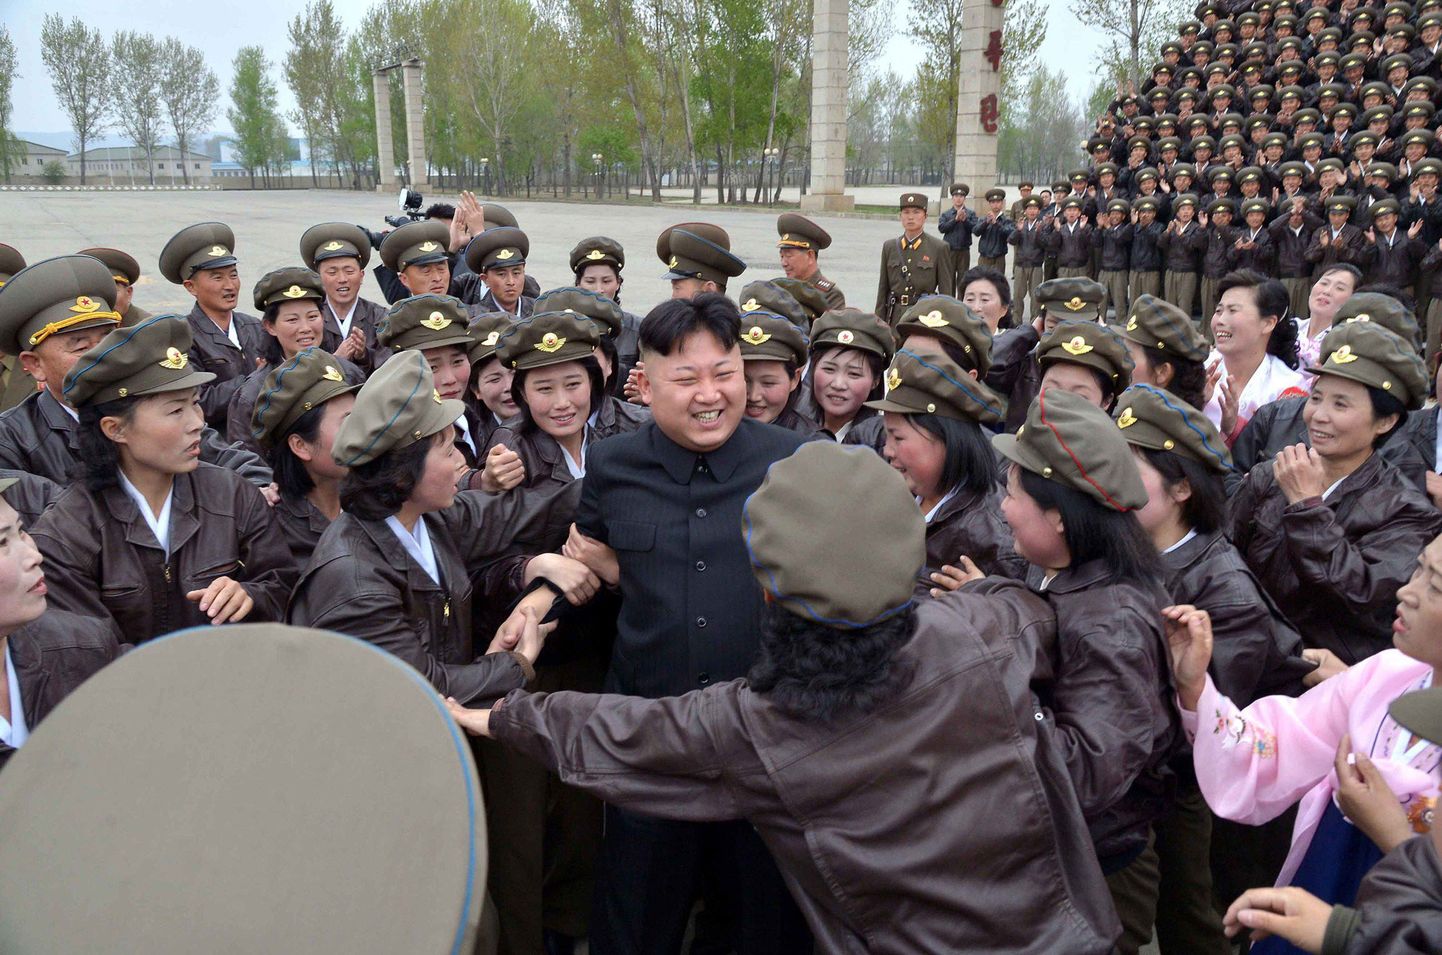 Põhja-Korea diktaator on naistemees?